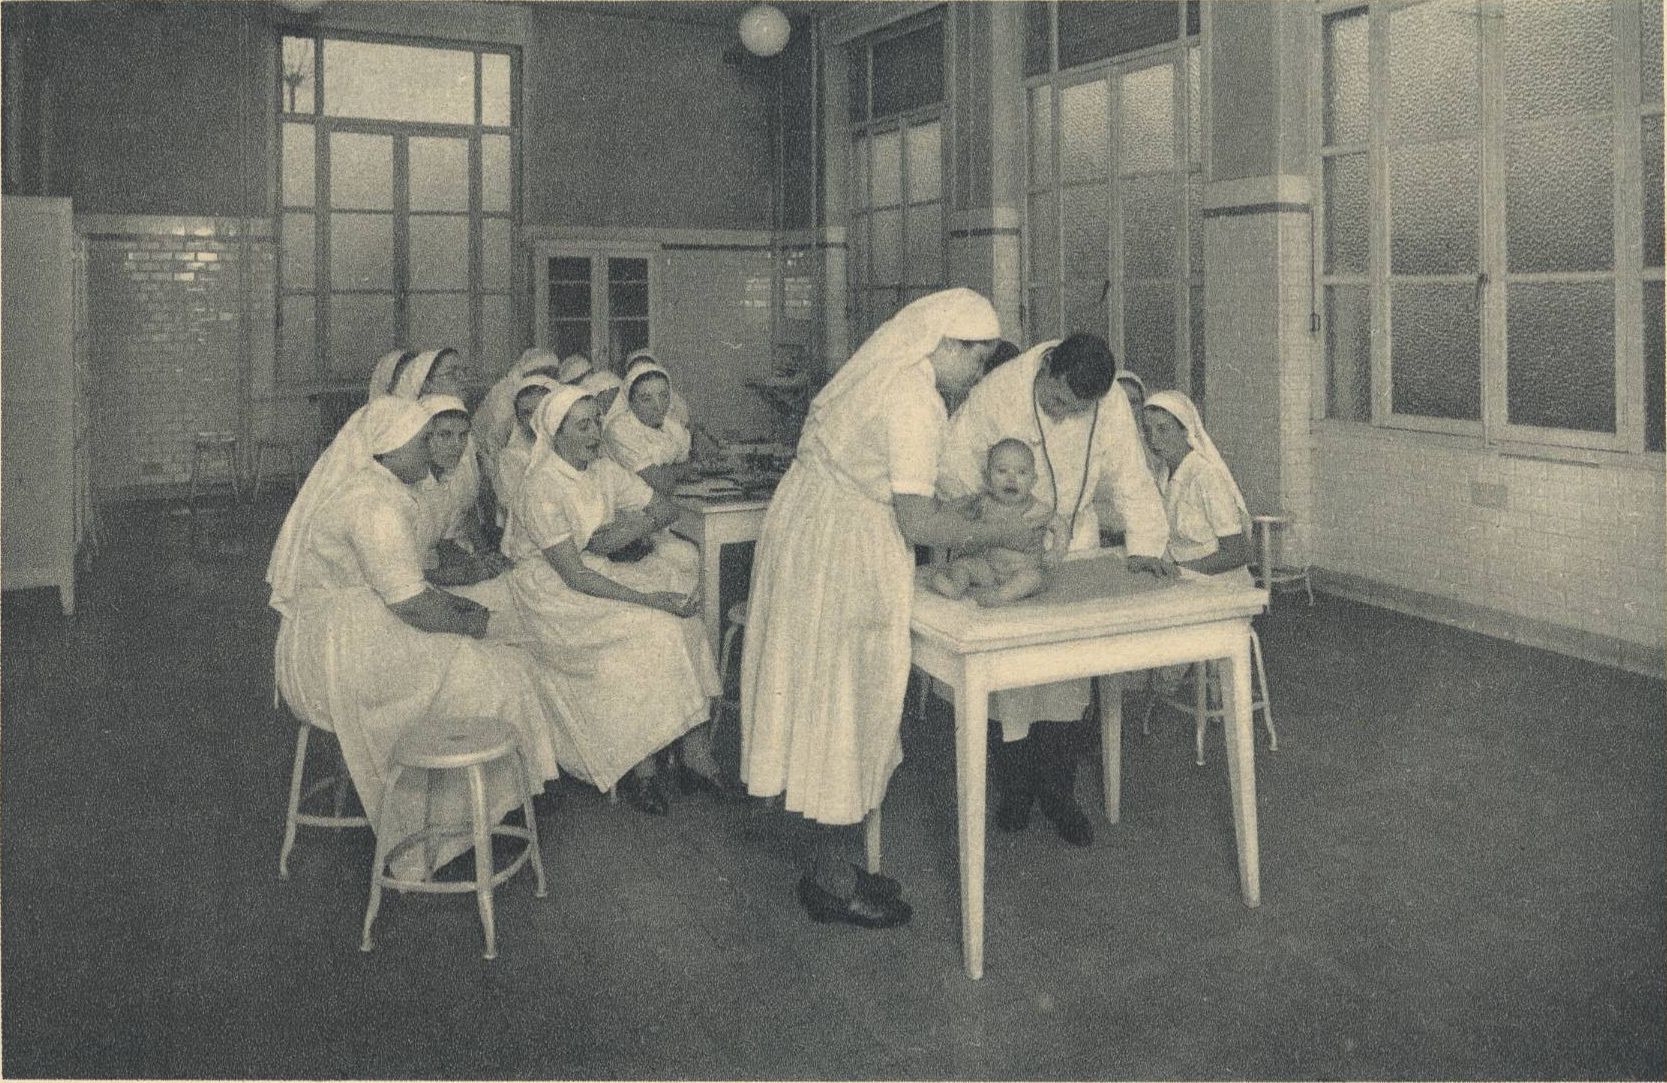 Ecole d'infirmières et de visiteuses de Lyon - Une consultation de nourrisson : carte postale NB (vers 1940, cote : 4FI/11519)